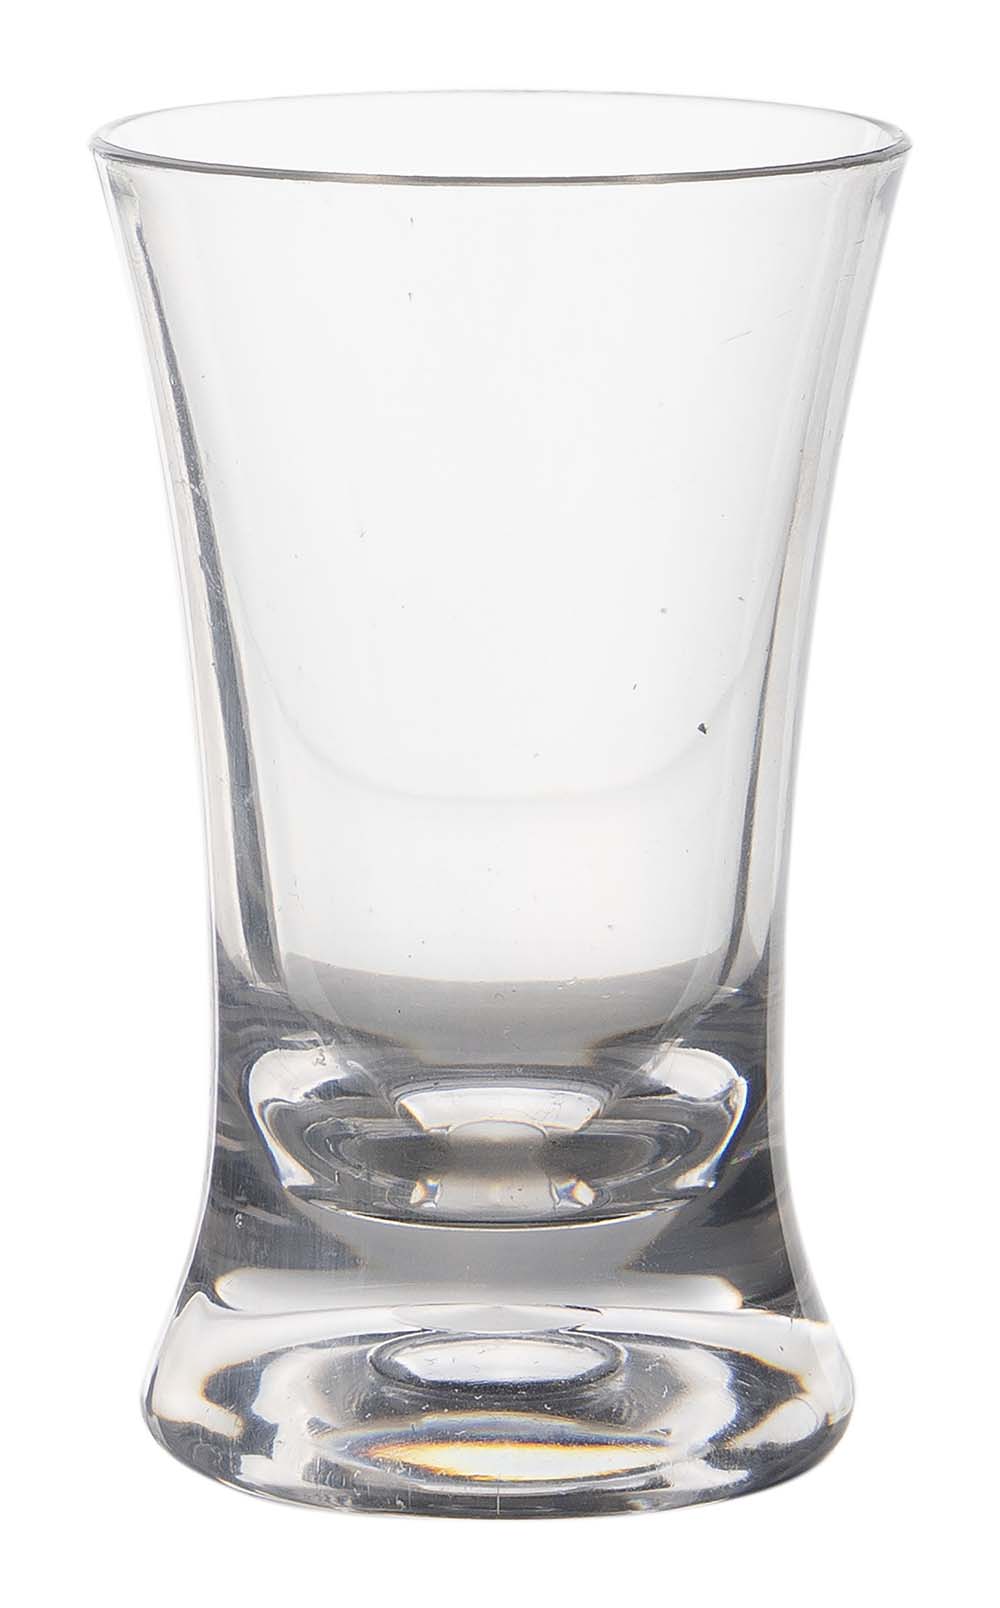 6915185 Een shotglas uit de Linea line collectie. Vrijwel onbreekbaar door hoogwaardig MS materiaal. Bestaat uit een set van 4 stuks. Zeer gemakkelijk te reinigen en langdurig te gebruiken, wat het glas erg duurzaam maakt. Daarnaast is het shotglas lichtgewicht en krasbestendig. Inhoud: 45 ml.